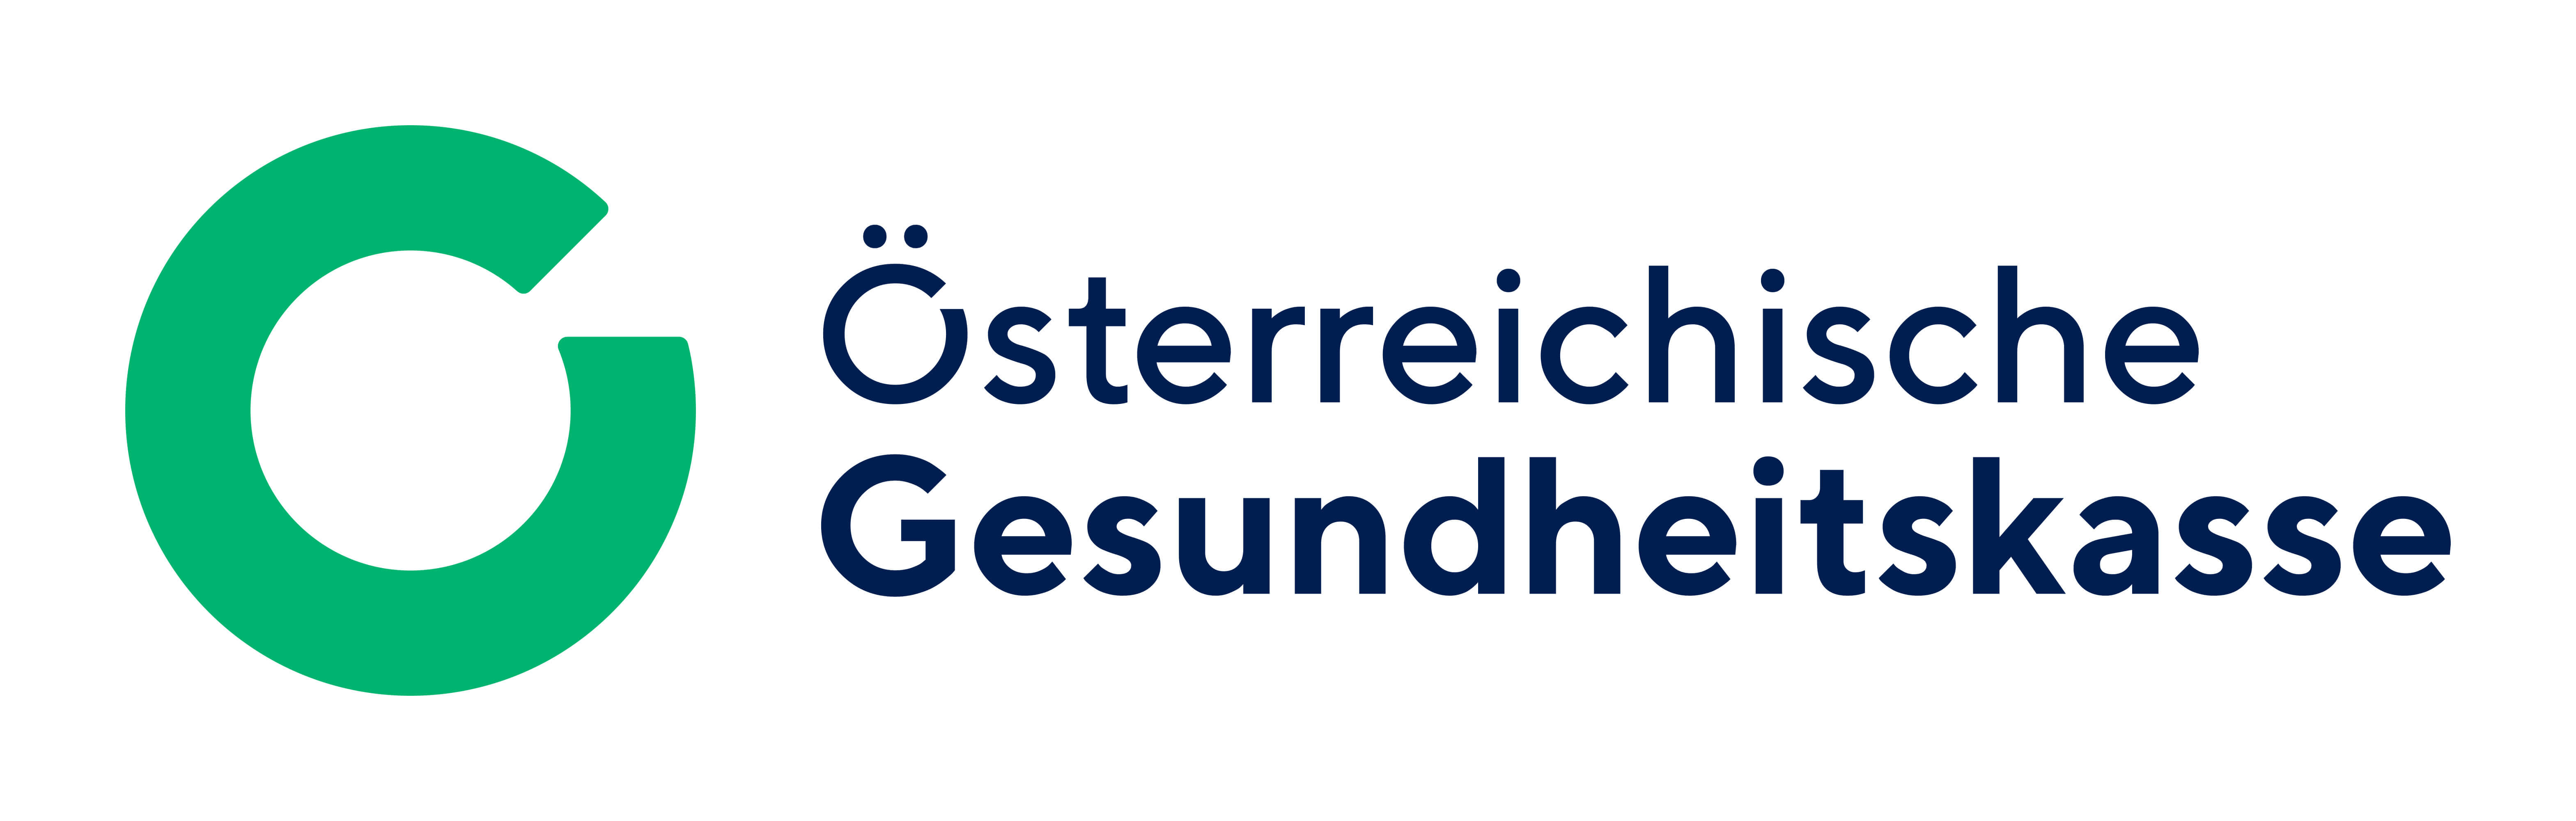 Logo Österreichische Gesundheitskasse 